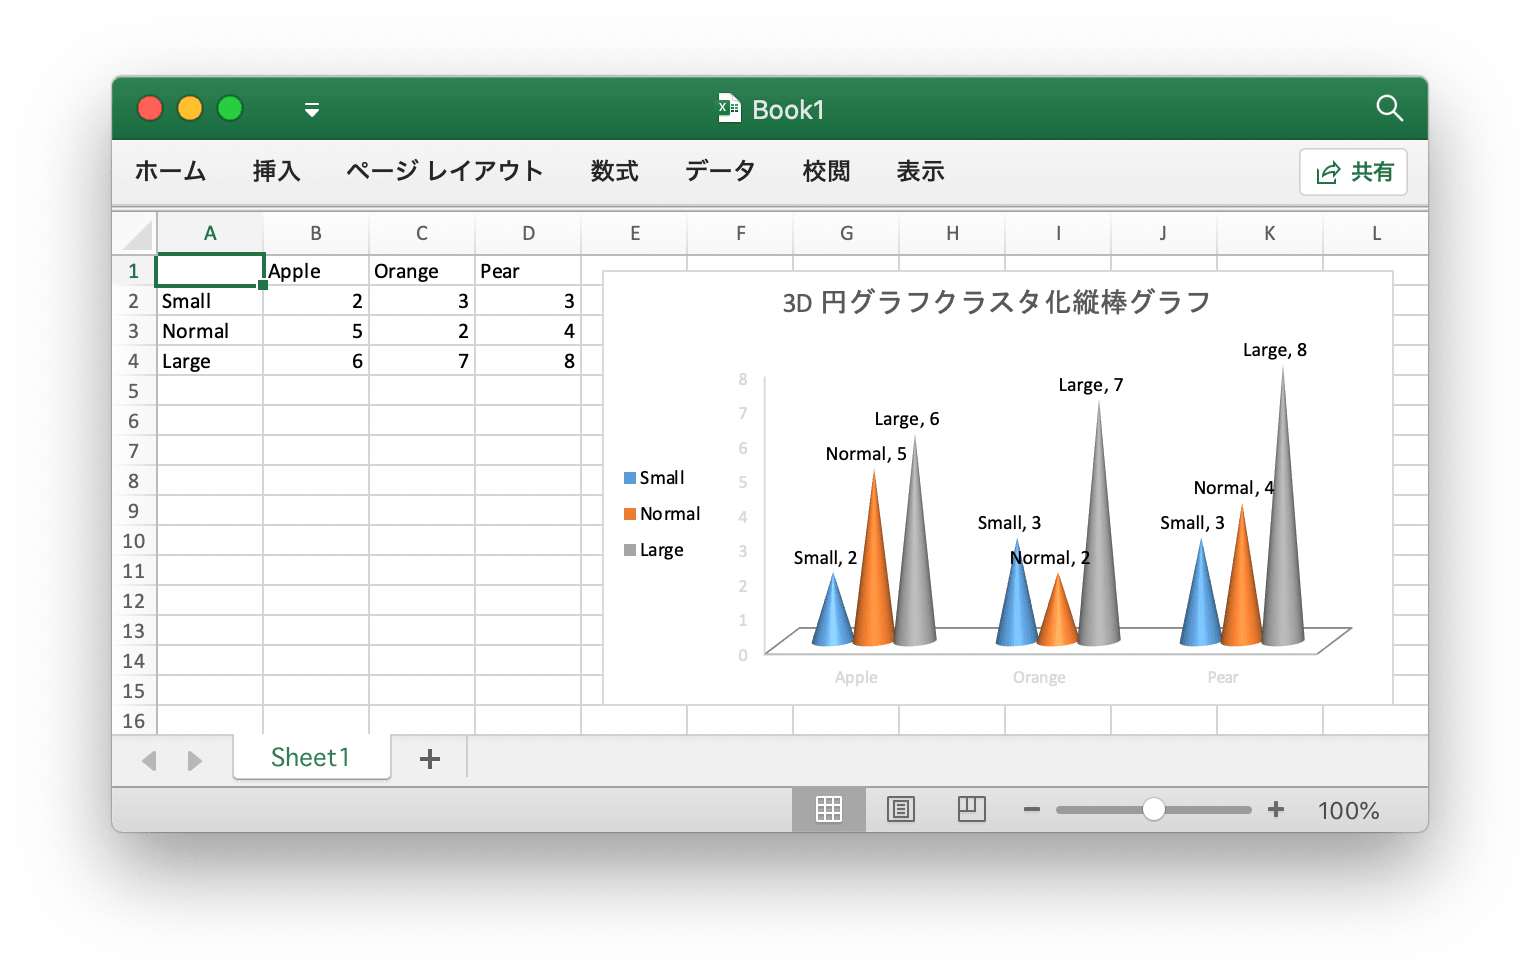 Go 言語を使用して Excel ドキュメントで 3D 円グラフクラスタ化縦棒グラフ 作成する